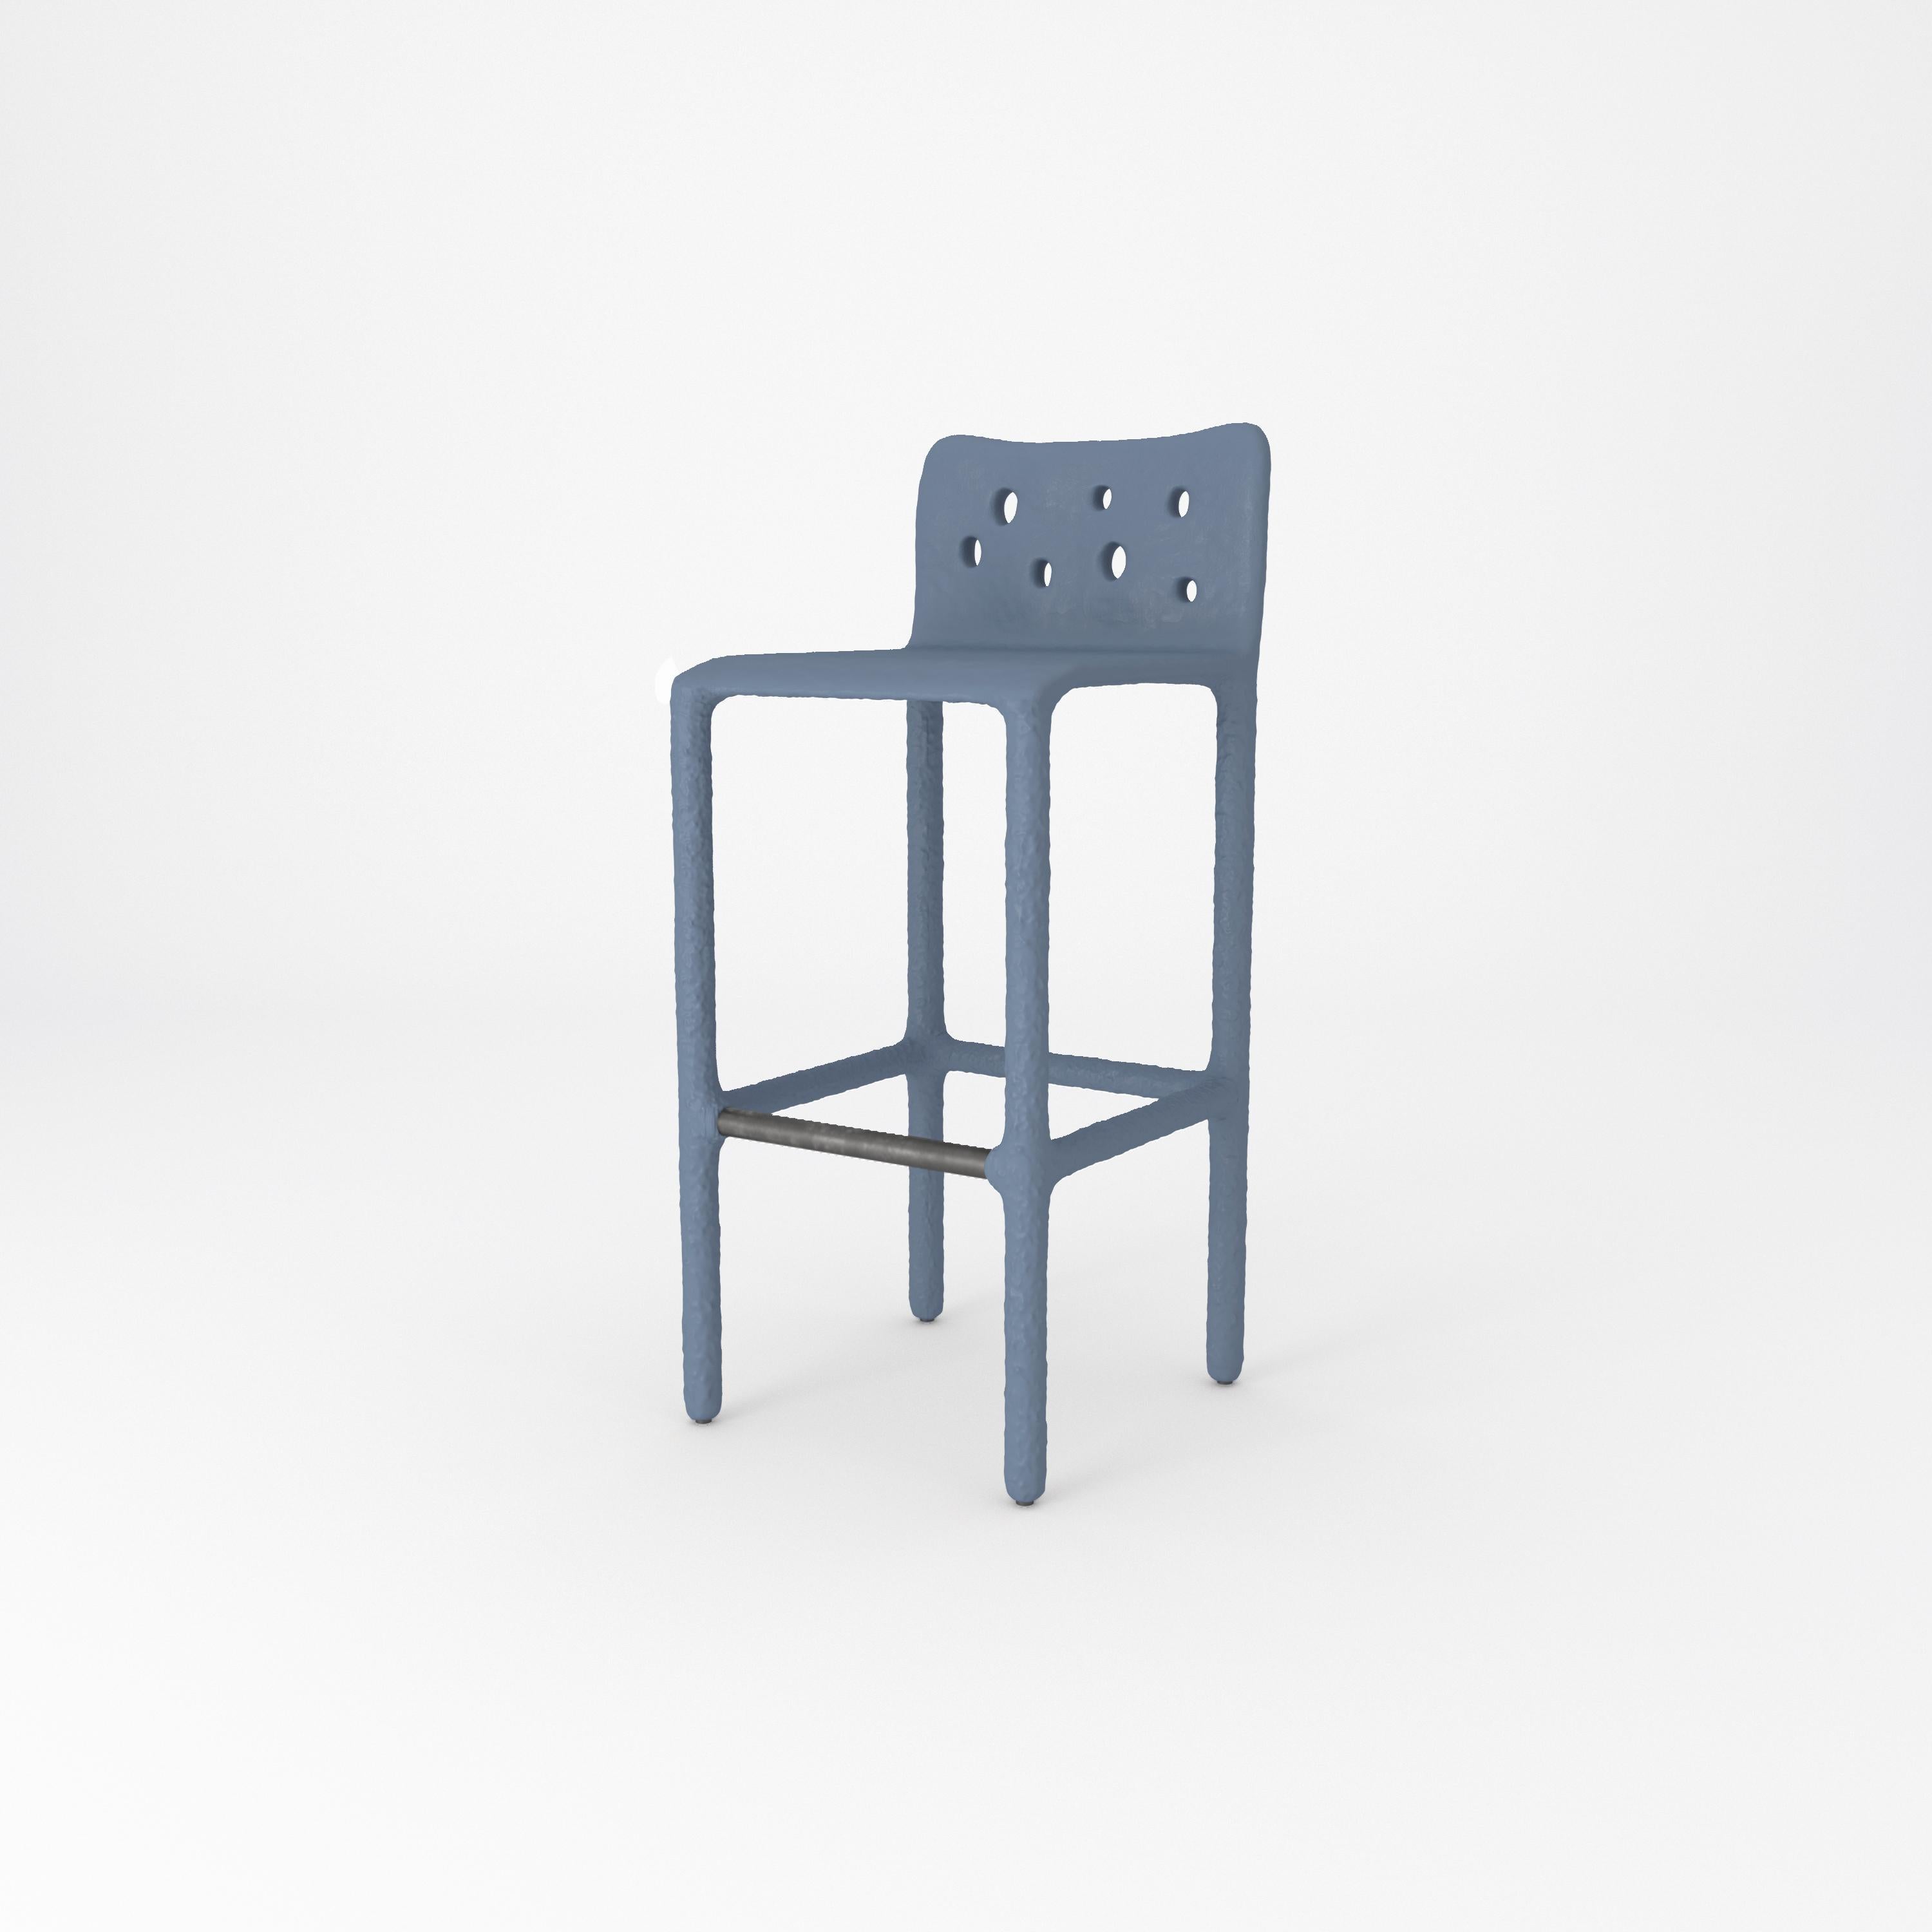 Chaise contemporaine bleue sculptée par Faina
Design : Victoriya Yakusha
MATERIAL : acier, caoutchouc de lin, biopolymère, cellulose.
Dimensions : Hauteur : 106 x Largeur : 45 x Largeur de la place assise : 49 Hauteur des pieds : 80 cm
Poids : 20